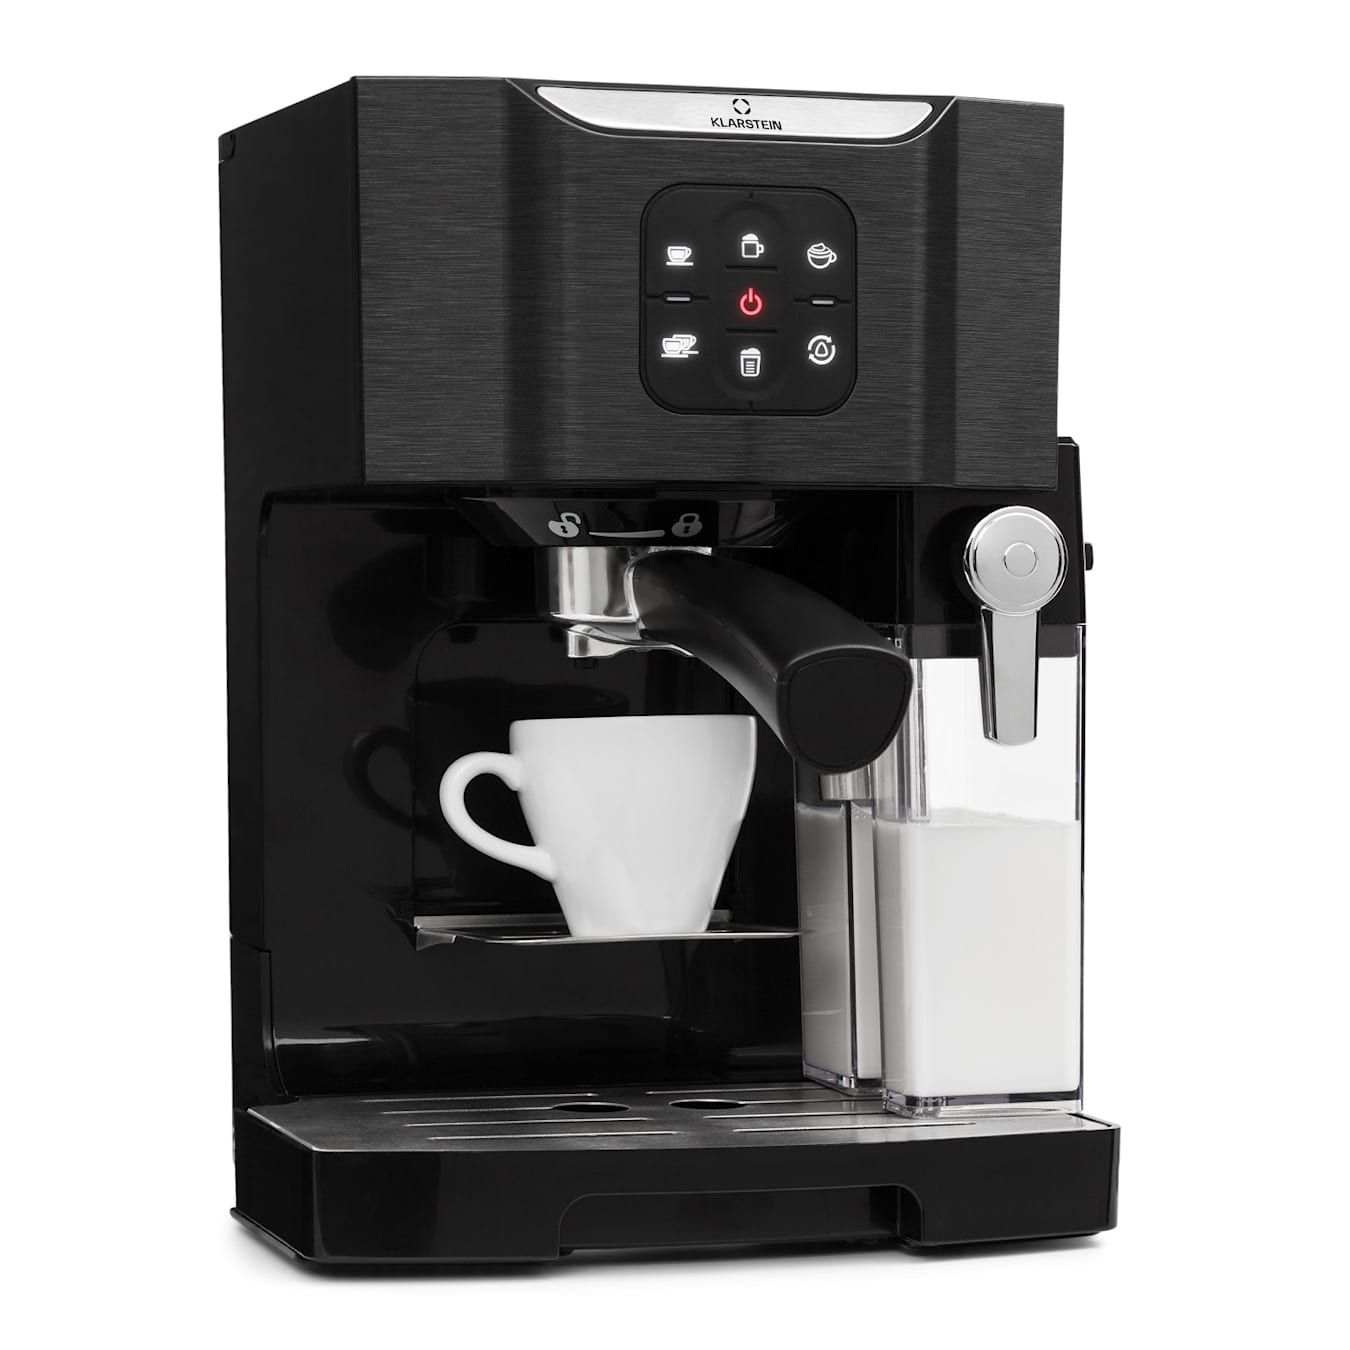 BellaVita coffee machine  3-in-1 function: espresso, cappuccino